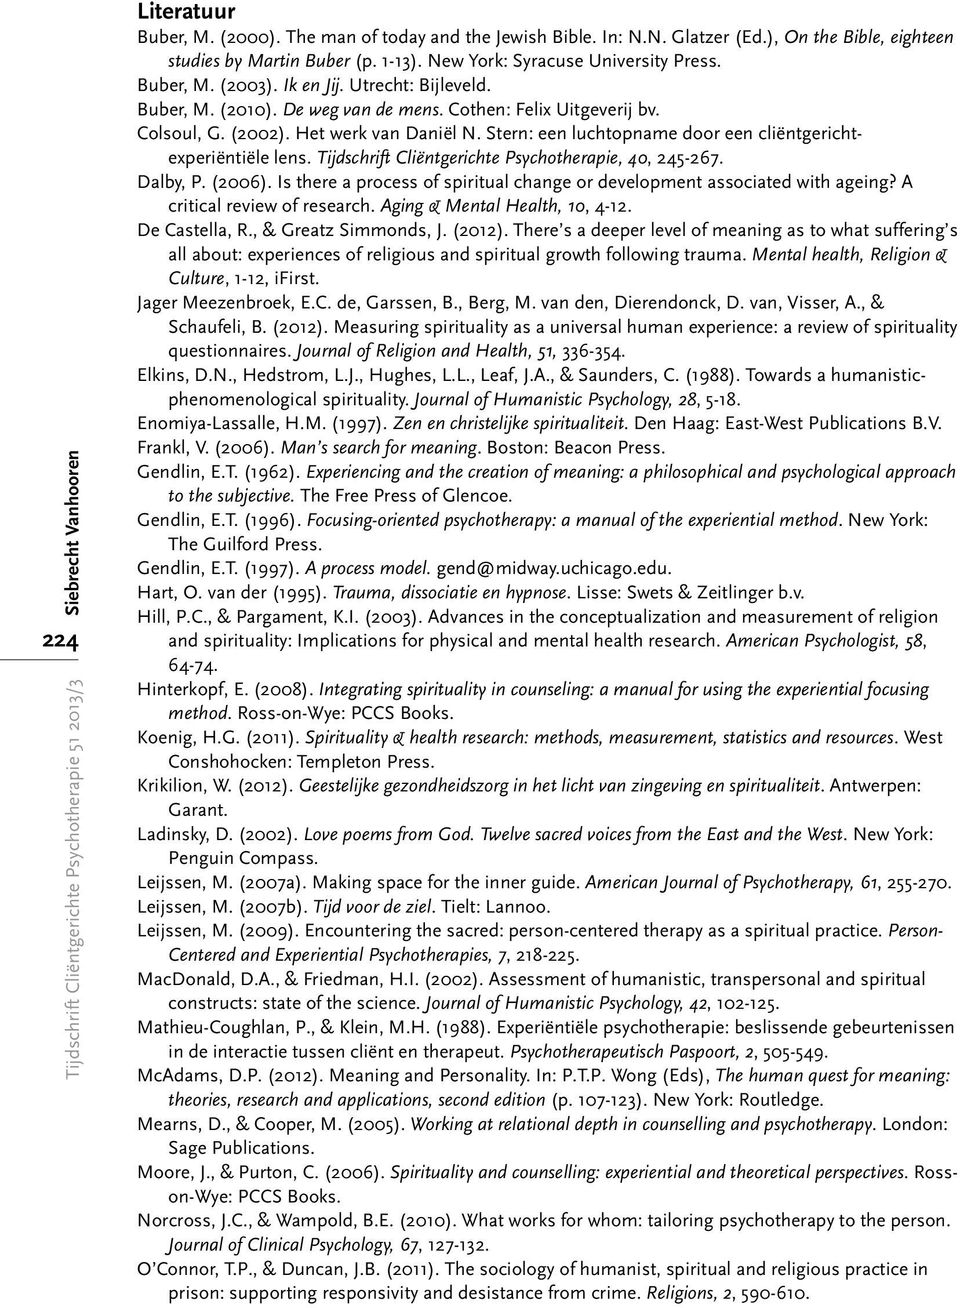 Stern: een luchtopname door een cliëntgerichtexperiëntiële lens. Tijdschrift Cliëntgerichte Psychotherapie, 40, 245-267. Dalby, P. (2006).